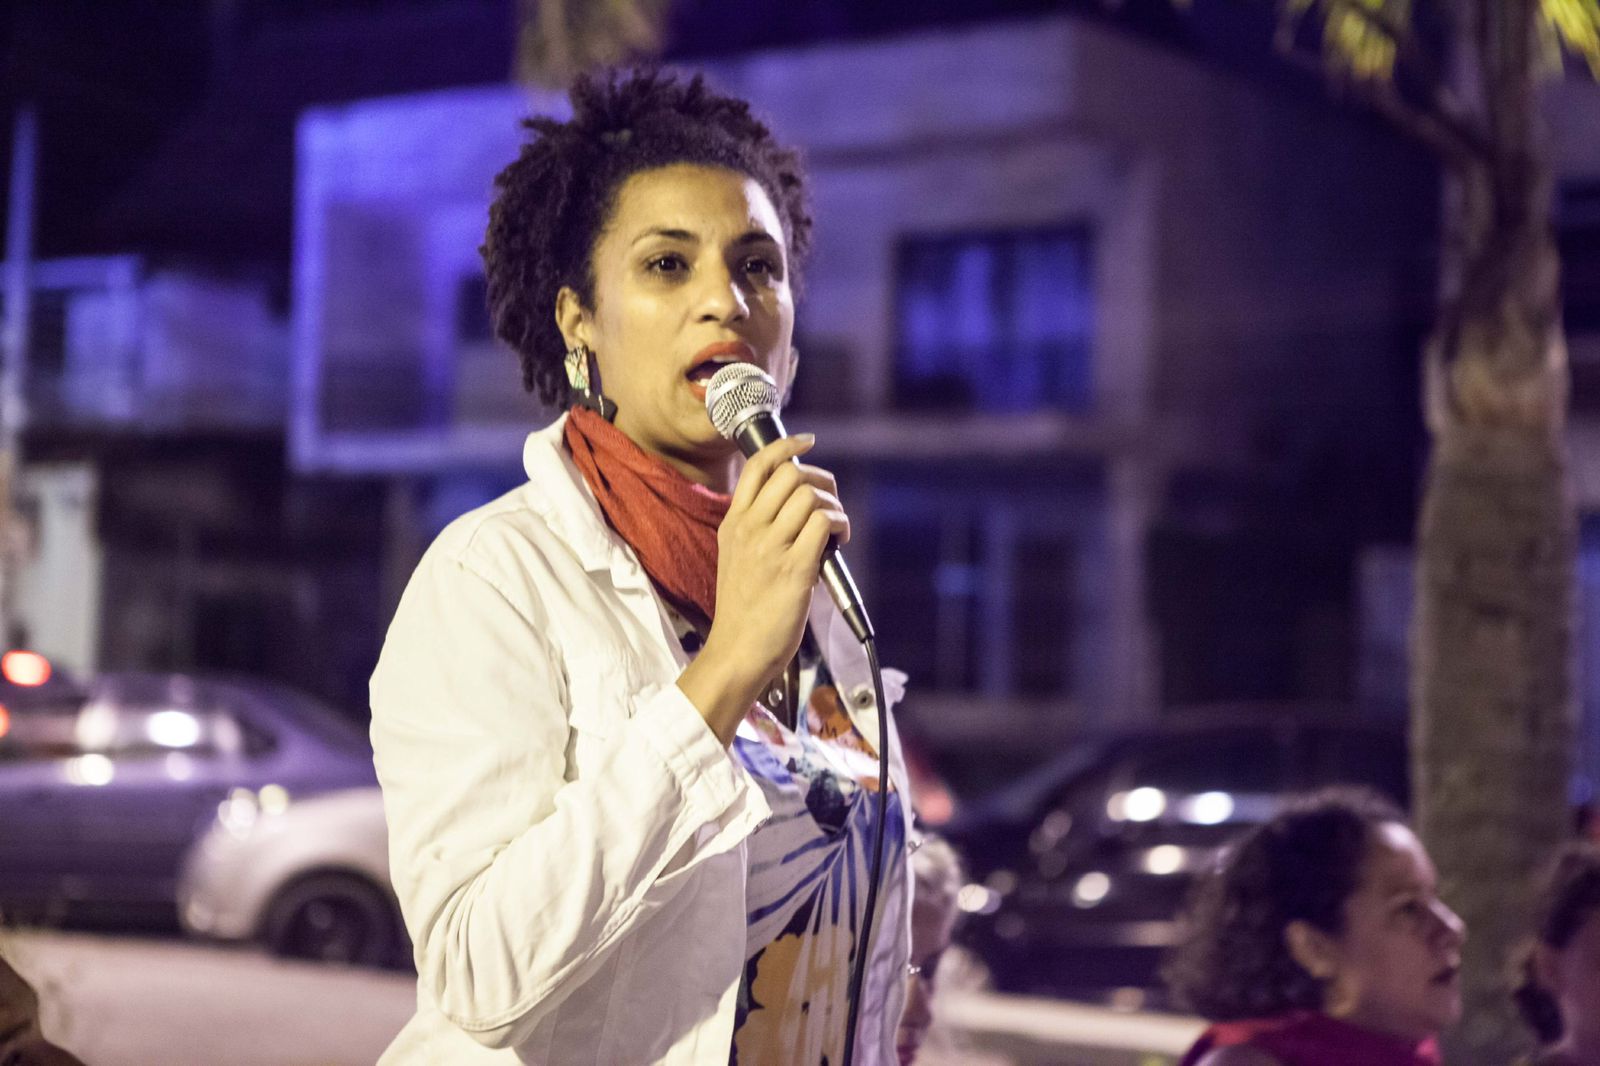 Vereadora Marielle Franco (PSOL-RJ), assassinada em 14 de março de 2018, há cinco anos. Foto: Leon Diniz